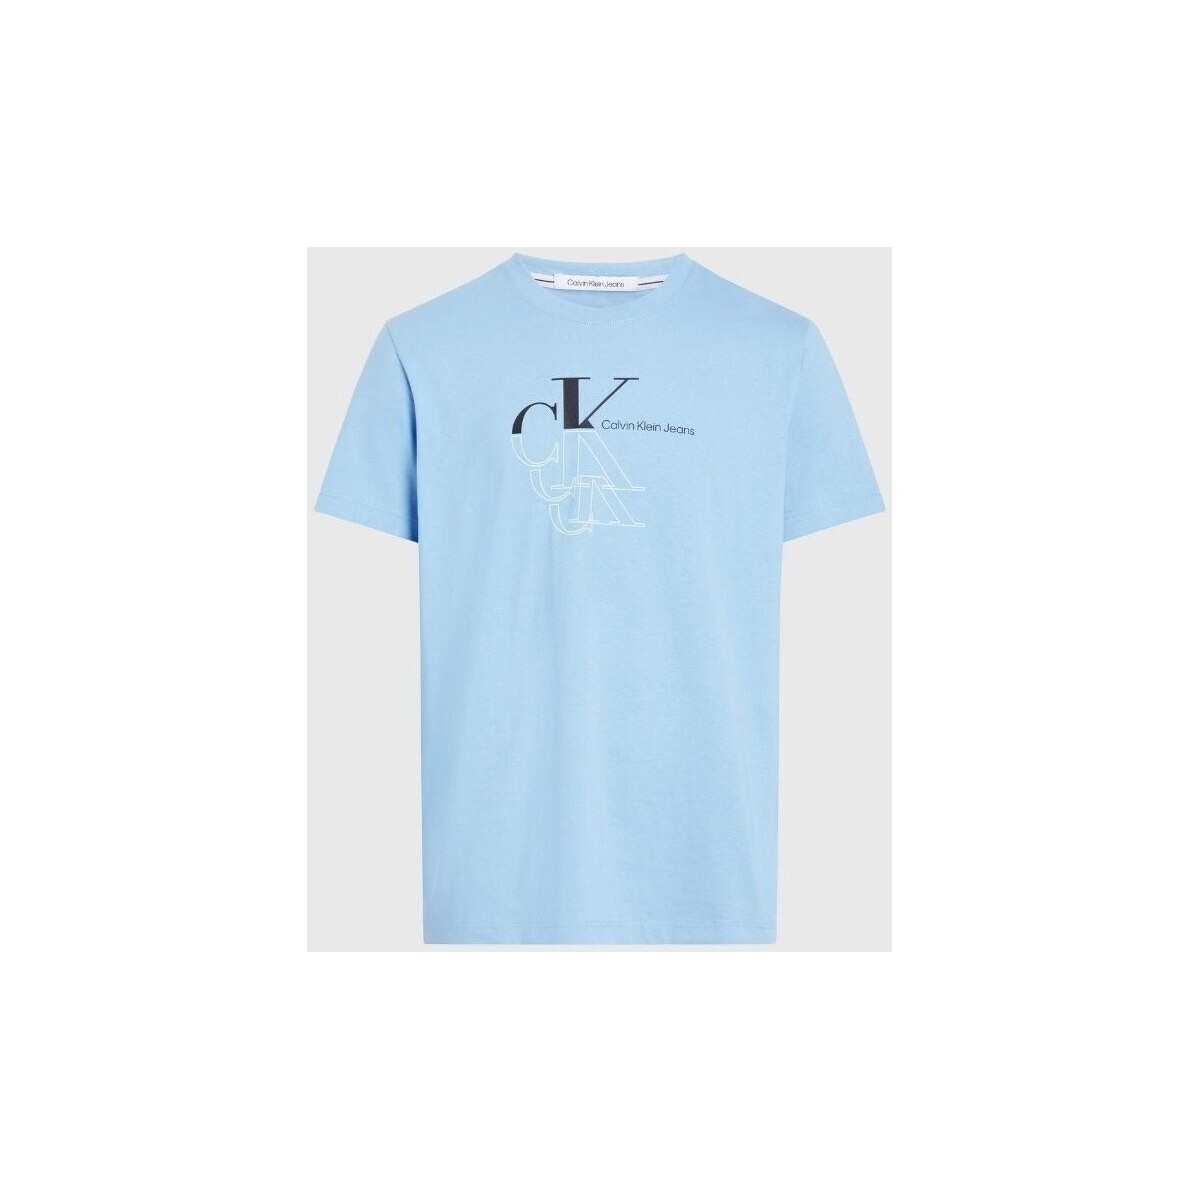 textil Herre T-shirts m. korte ærmer Calvin Klein Jeans J30J325352CEZ Blå